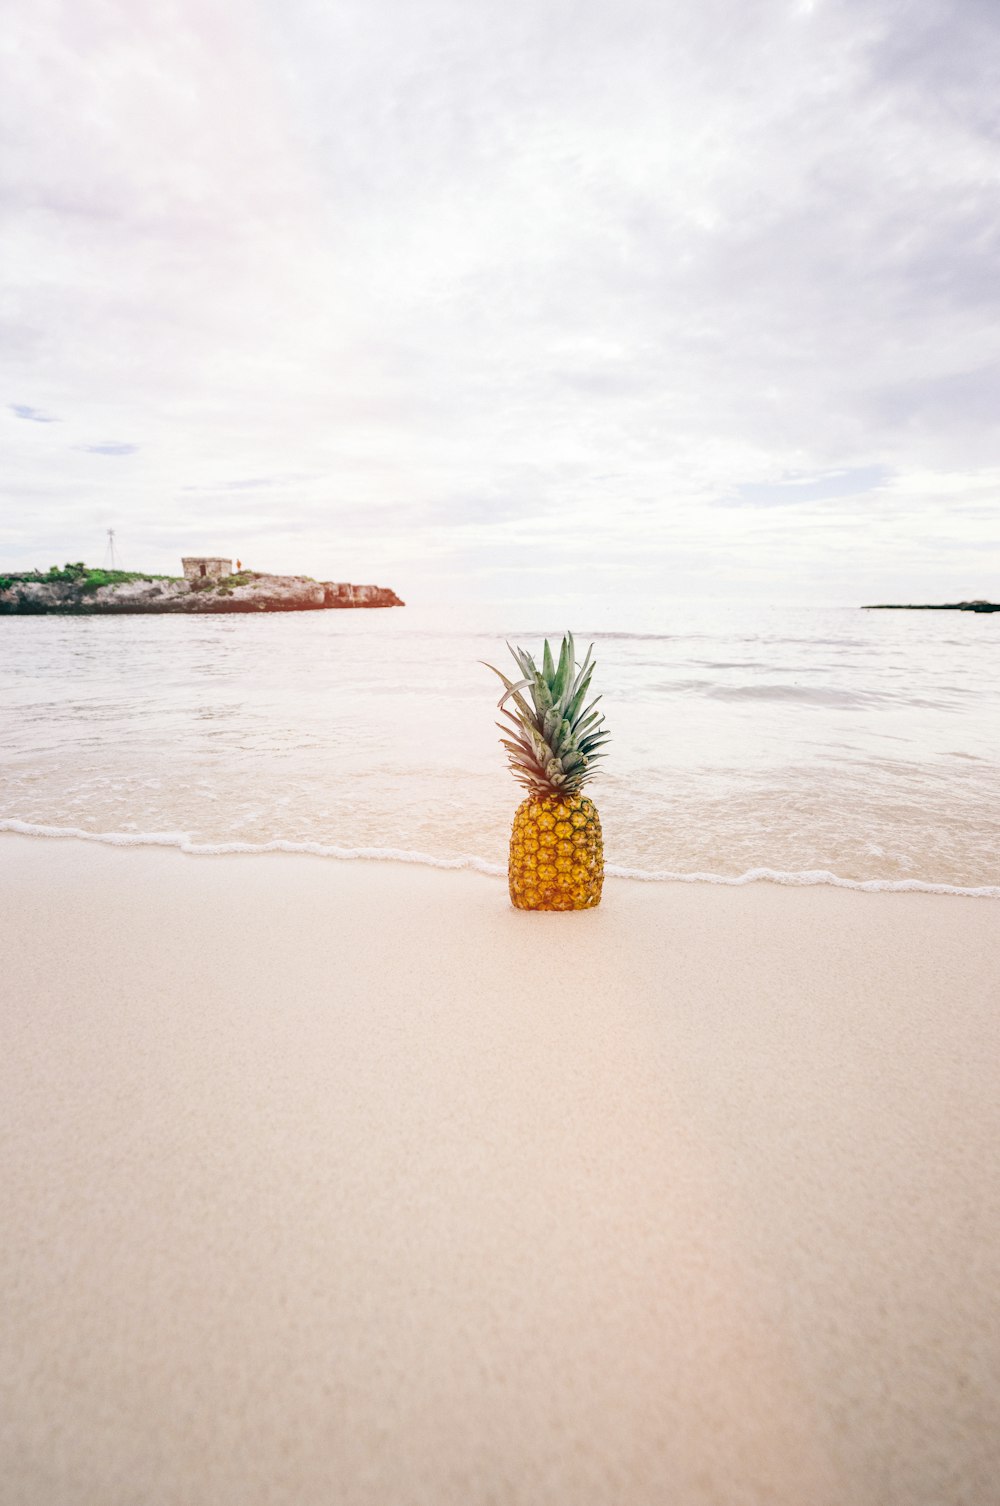 ビーチ近くの砂浜のパイナップル